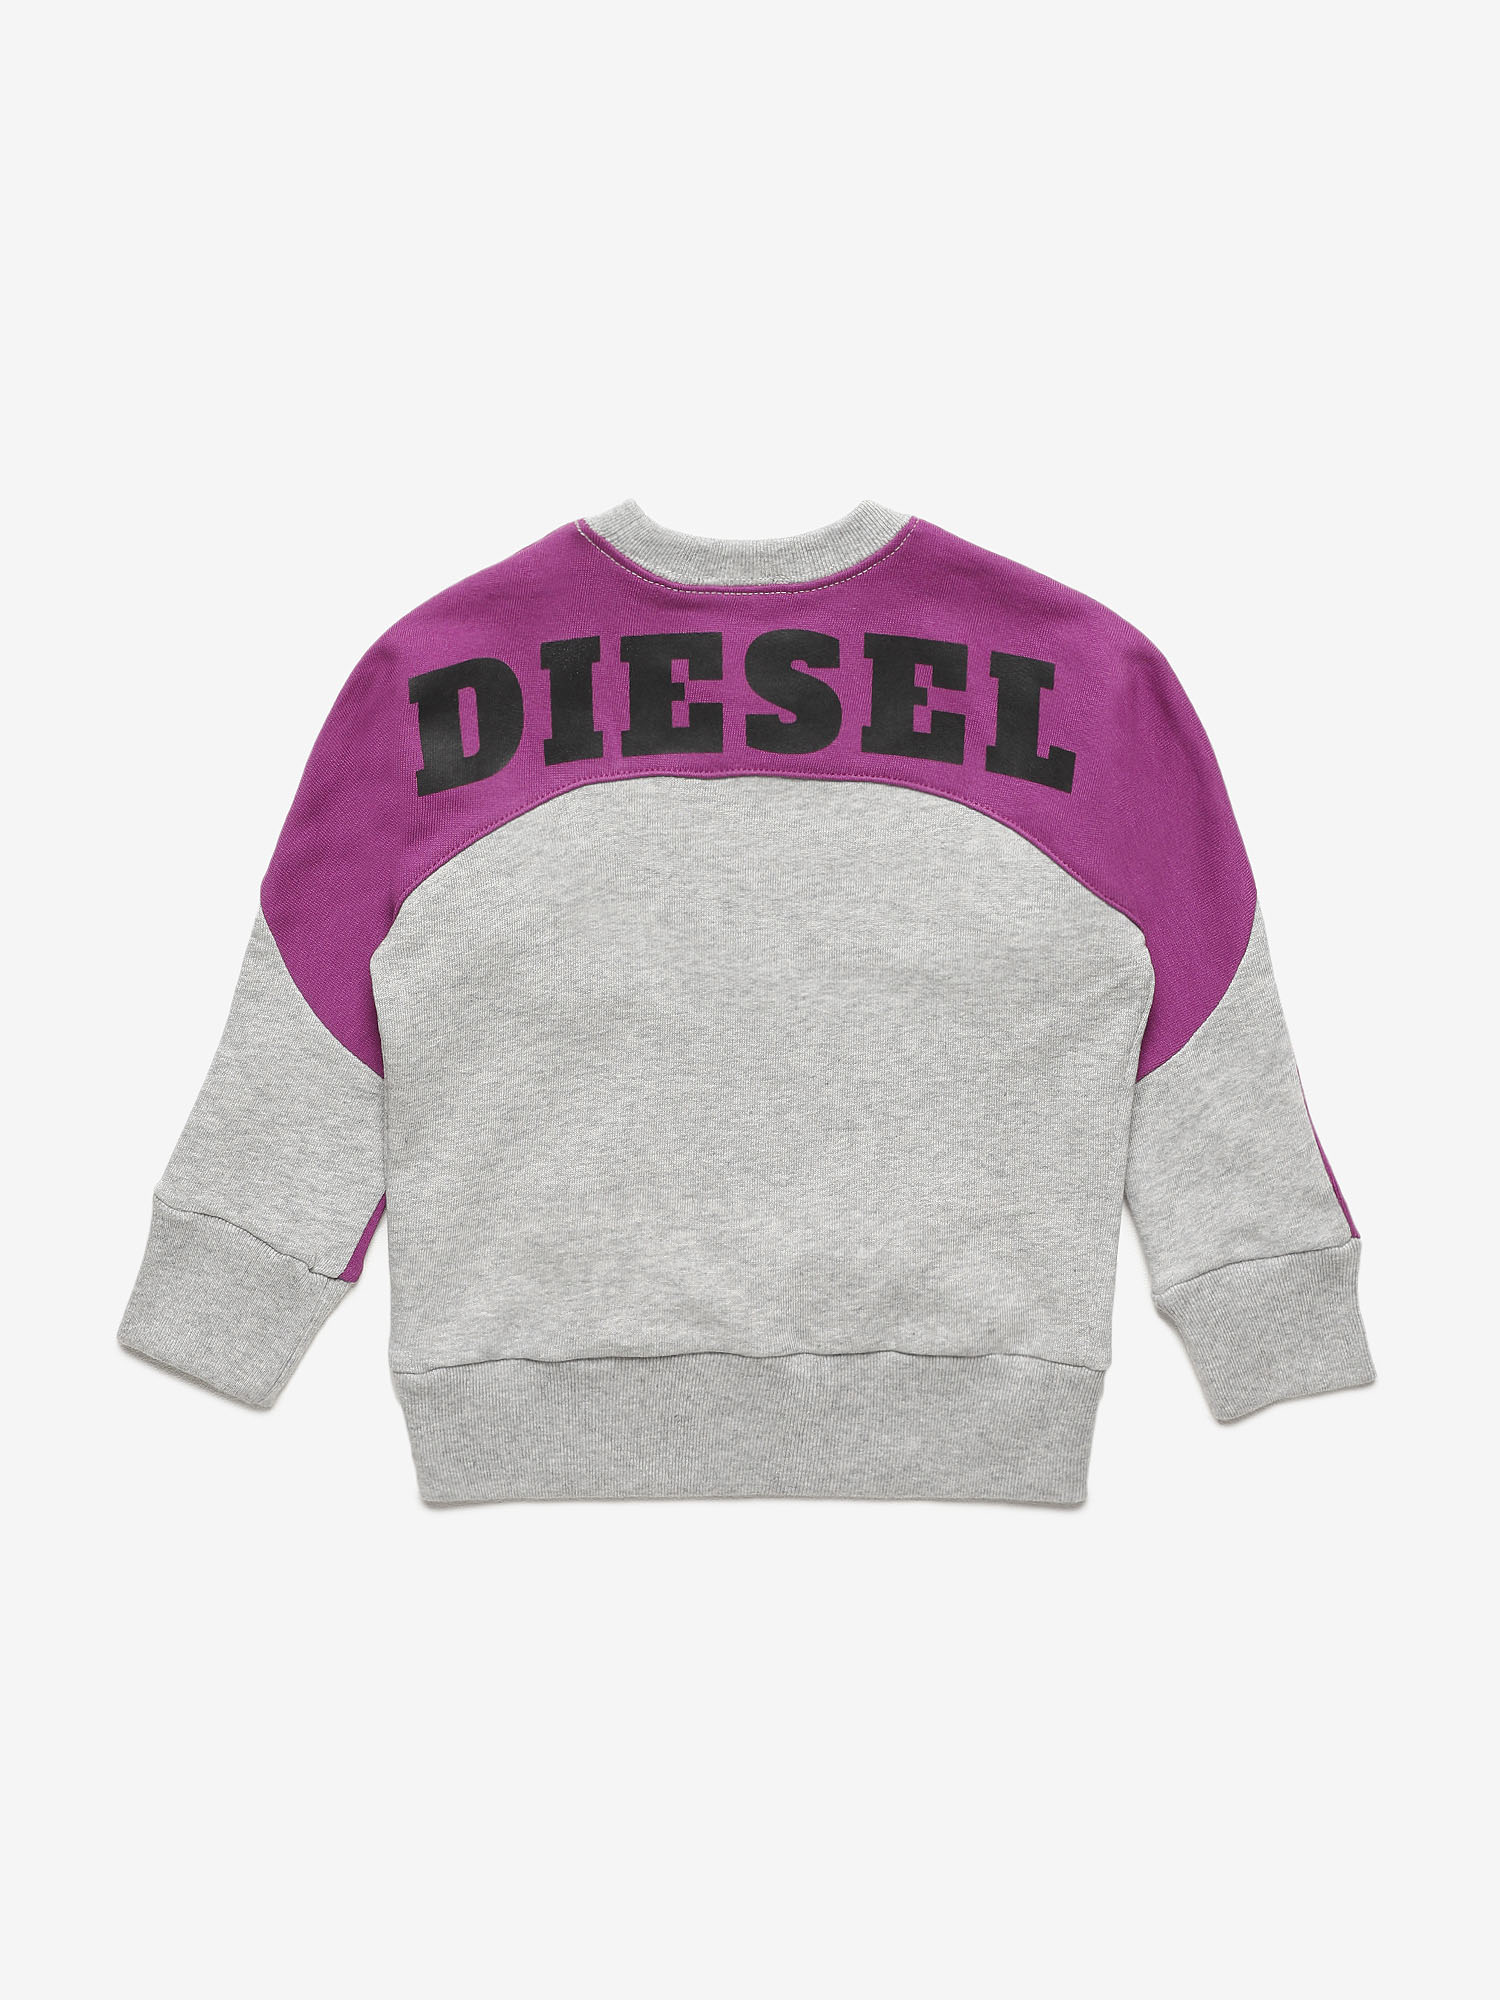 Diesel - STRICKB-R, Grey/Violet - Image 2